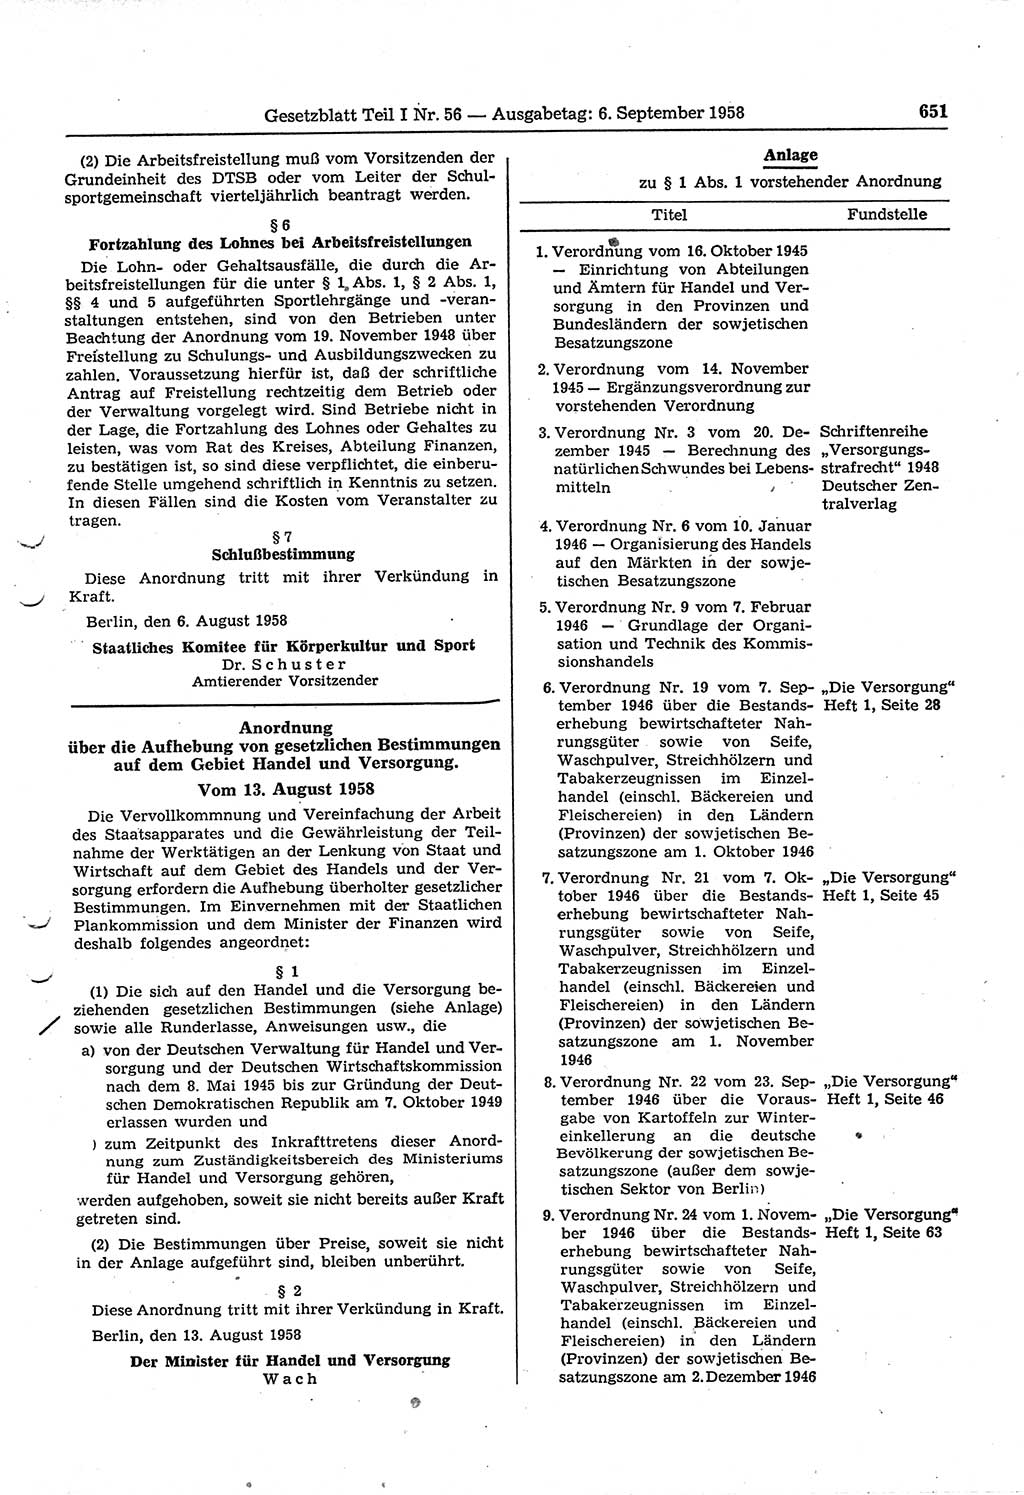 Gesetzblatt (GBl.) der Deutschen Demokratischen Republik (DDR) Teil Ⅰ 1958, Seite 651 (GBl. DDR Ⅰ 1958, S. 651)